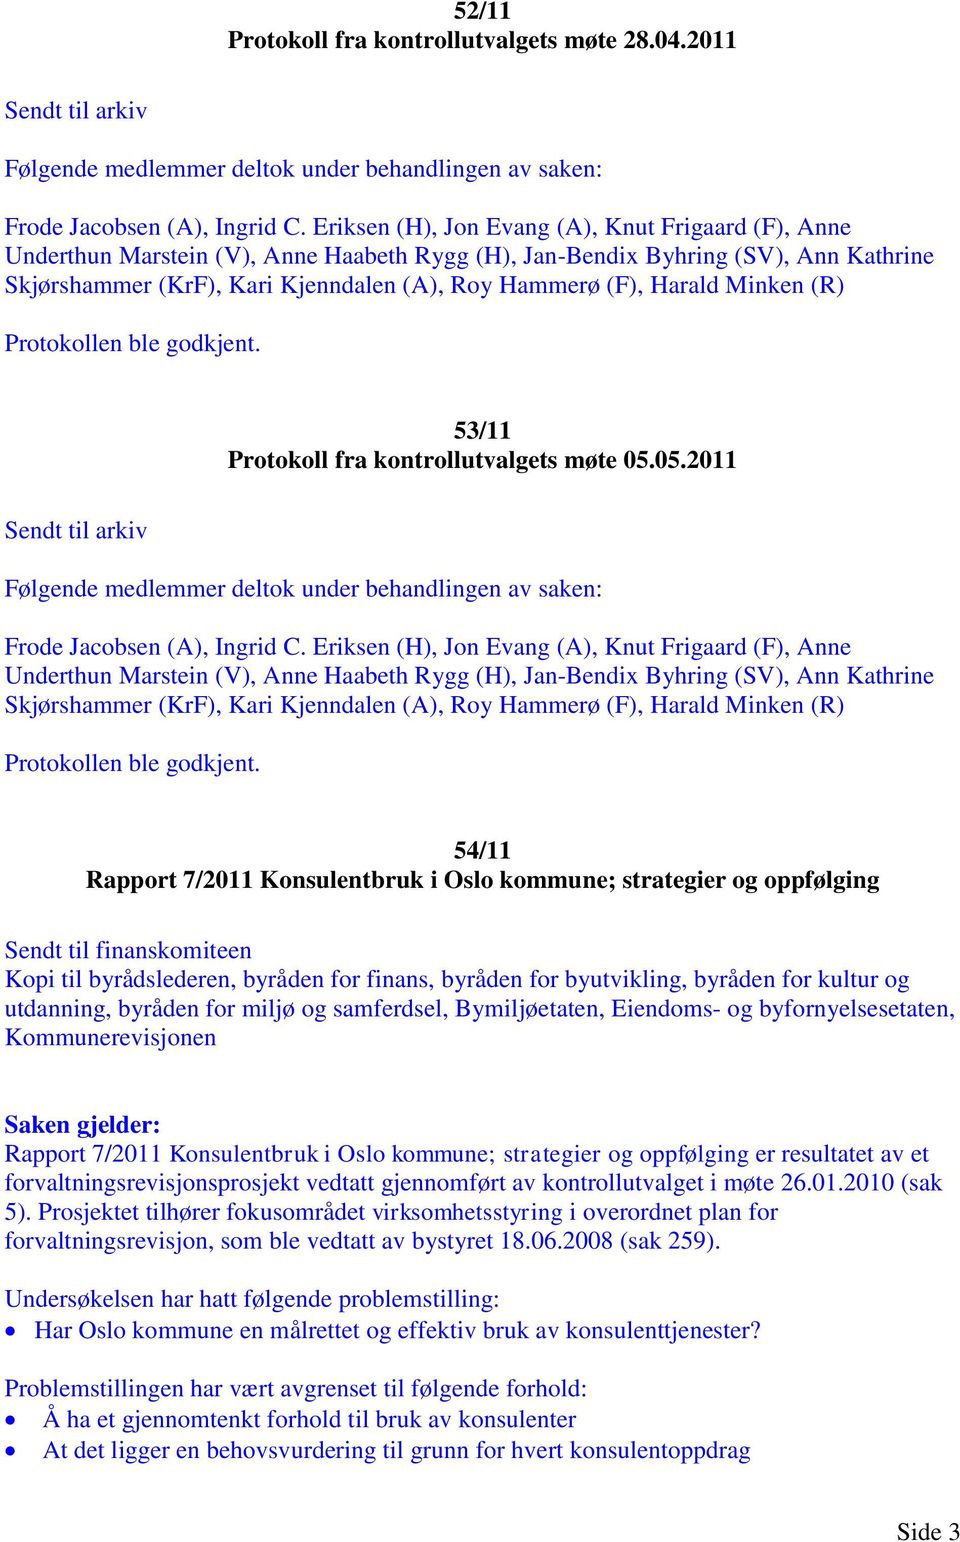 54/11 Rapport 7/2011 Konsulentbruk i Oslo kommune; strategier og oppfølging Sendt til finanskomiteen Kopi til byrådslederen, byråden for finans, byråden for byutvikling, byråden for kultur og